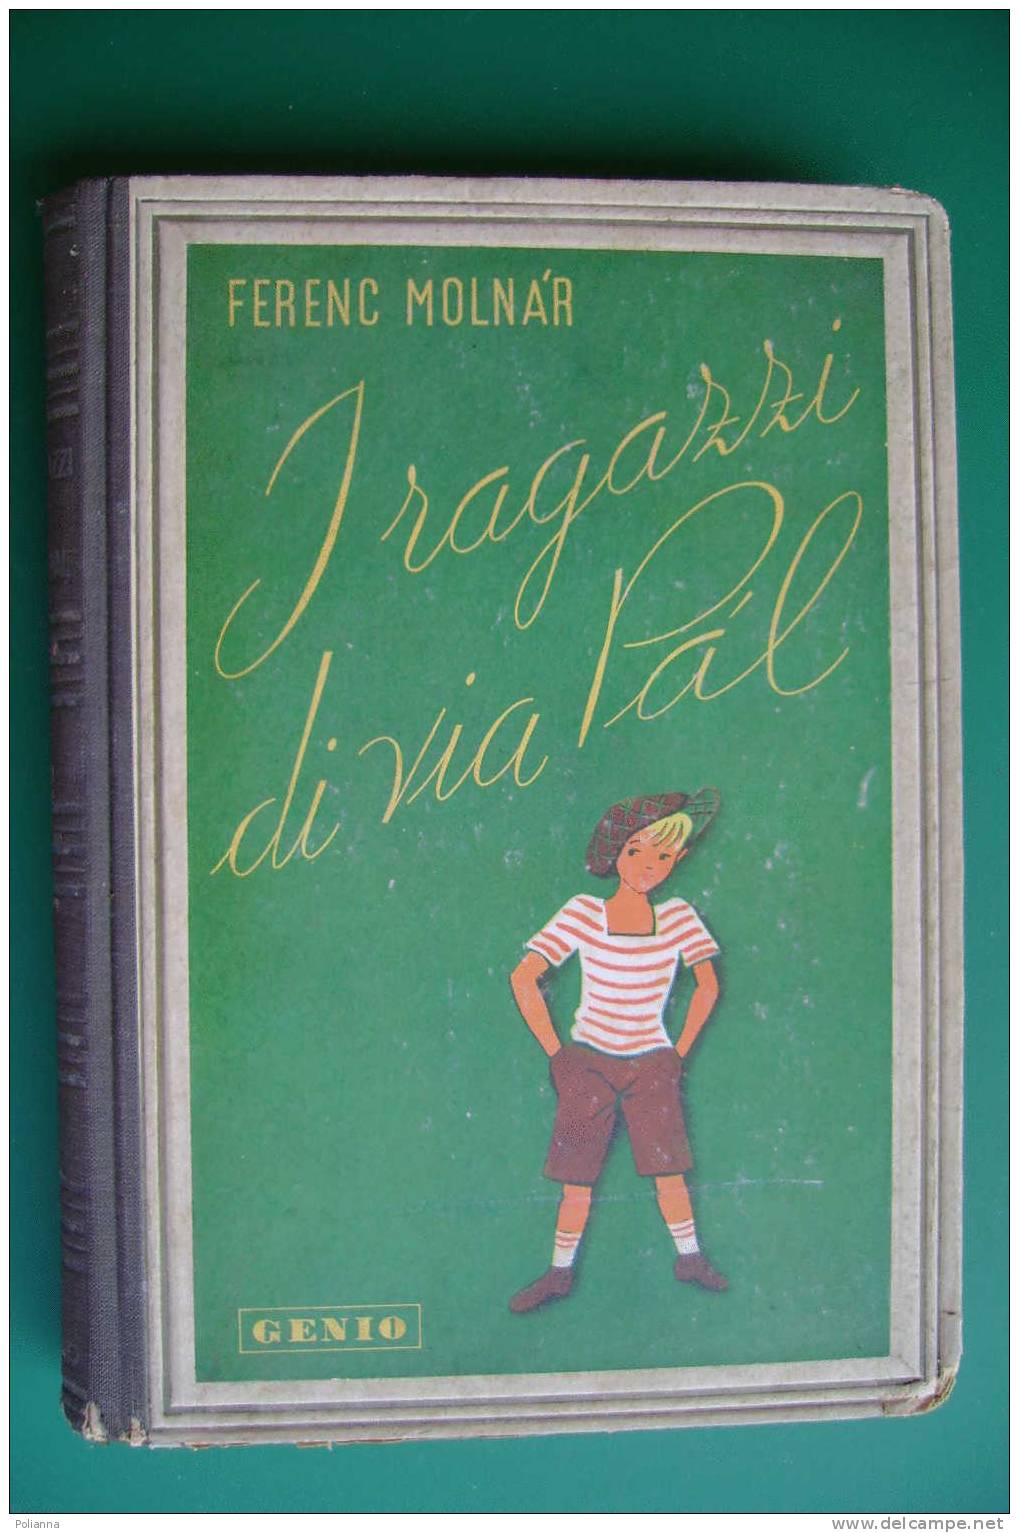 PDC/40 Ferenc Molnar I RAGAZZI DI VIA PAL Genio 1945/illustrato - Antiguos